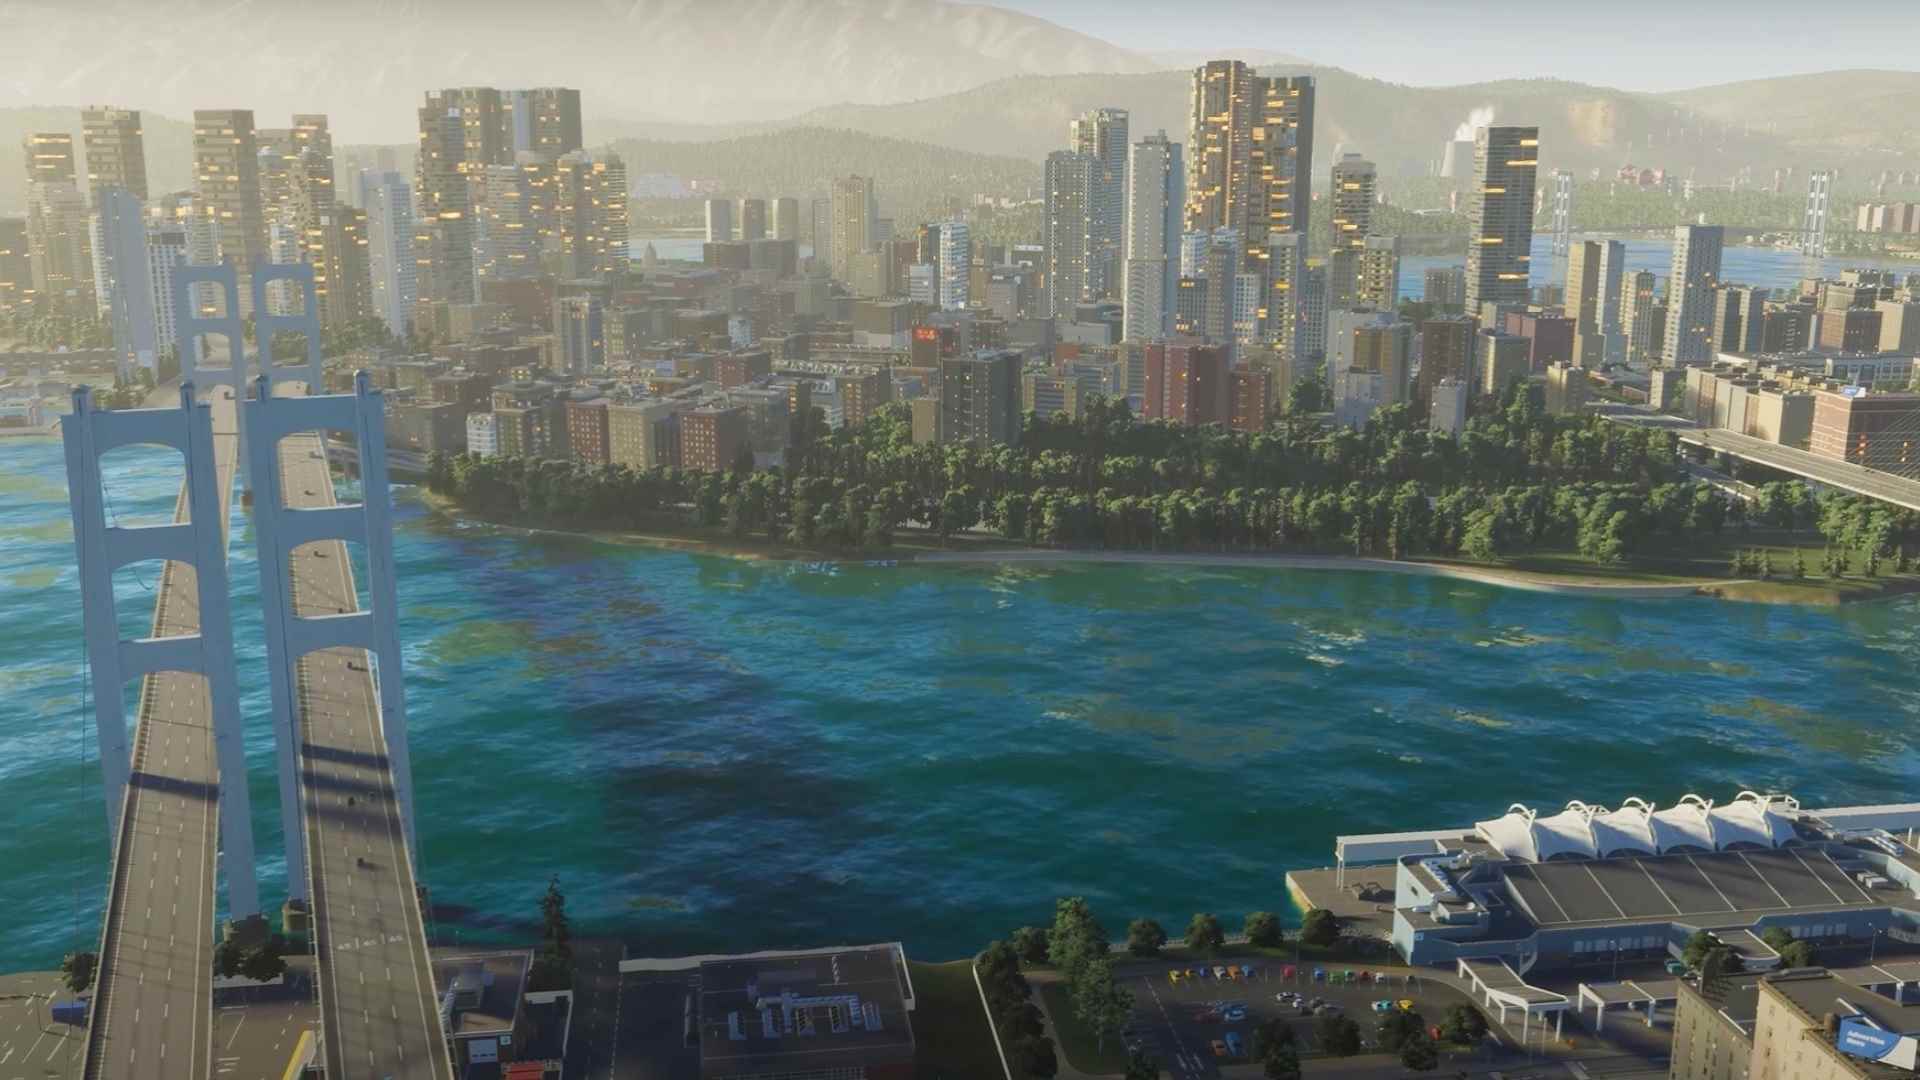 Cities Skylines 2 trafiği: Şehir kurma oyunu Cities Skylines 2'de genişleyen bir metropol ve büyük bir demir köprü